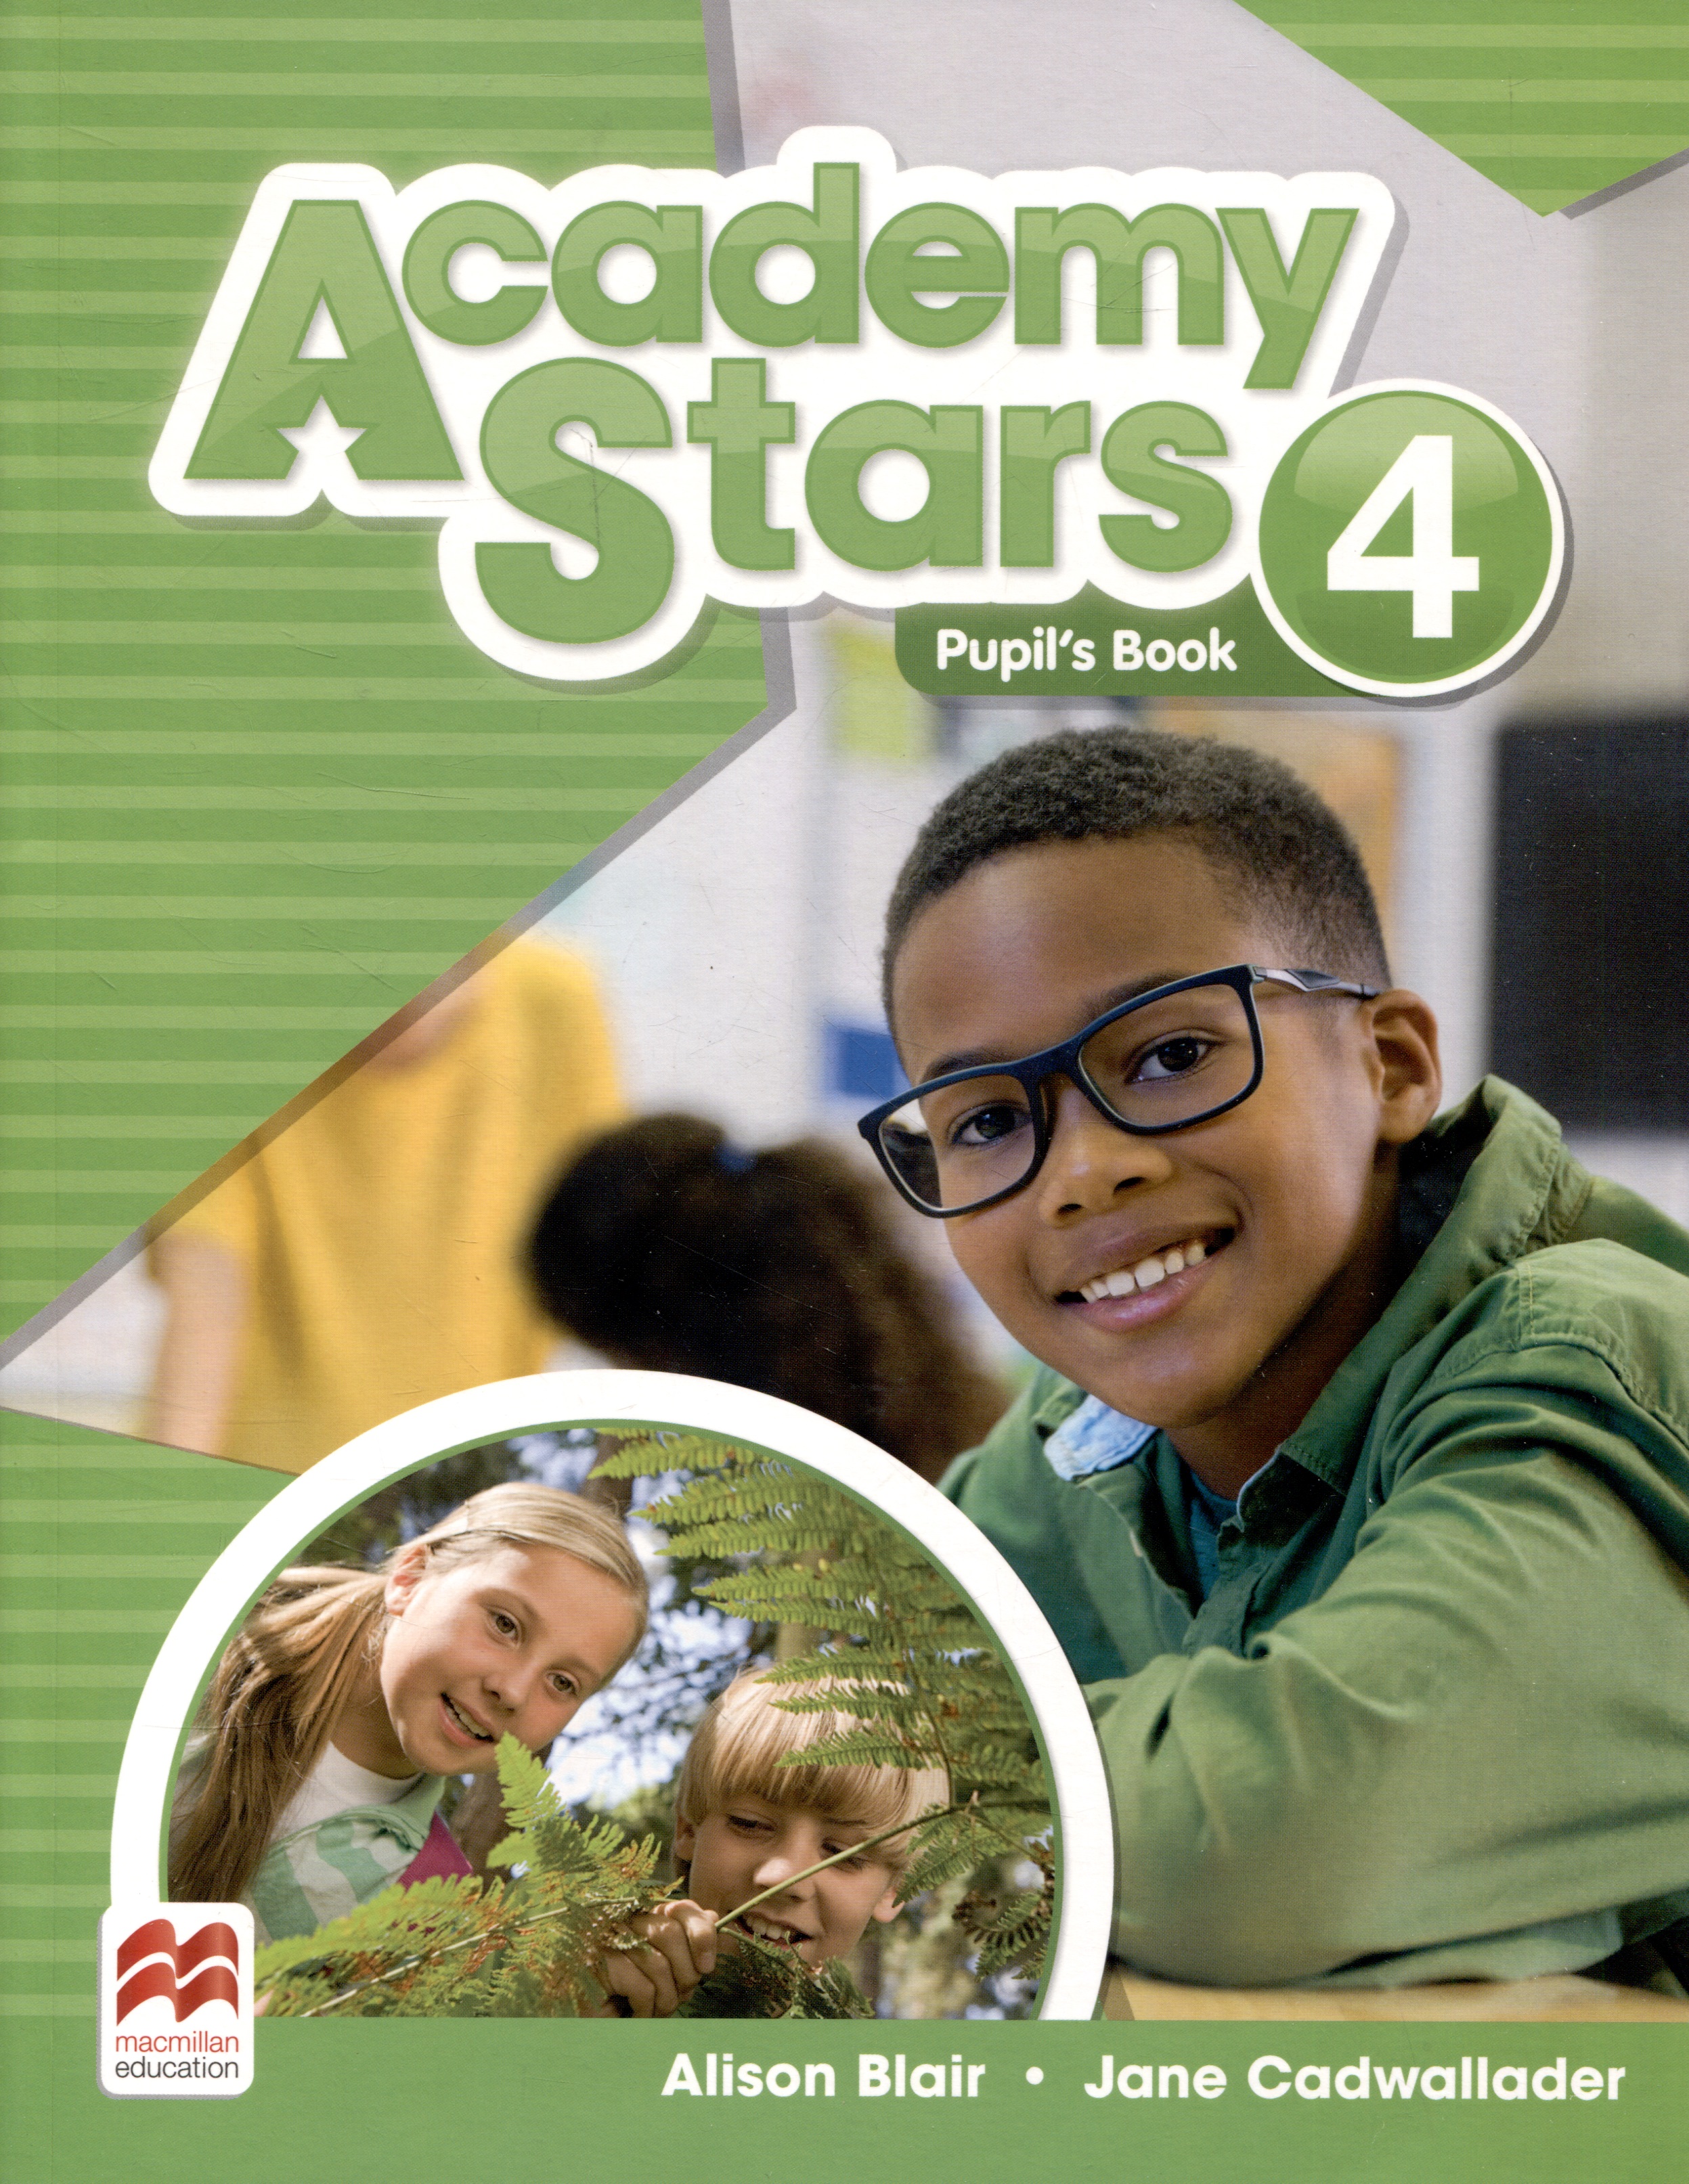 blair alison cadwallader jane academy stars level 4 pupil’s book Cadwallader Jane, Блэр Элисон Academy Stars 4 PB + Online Code